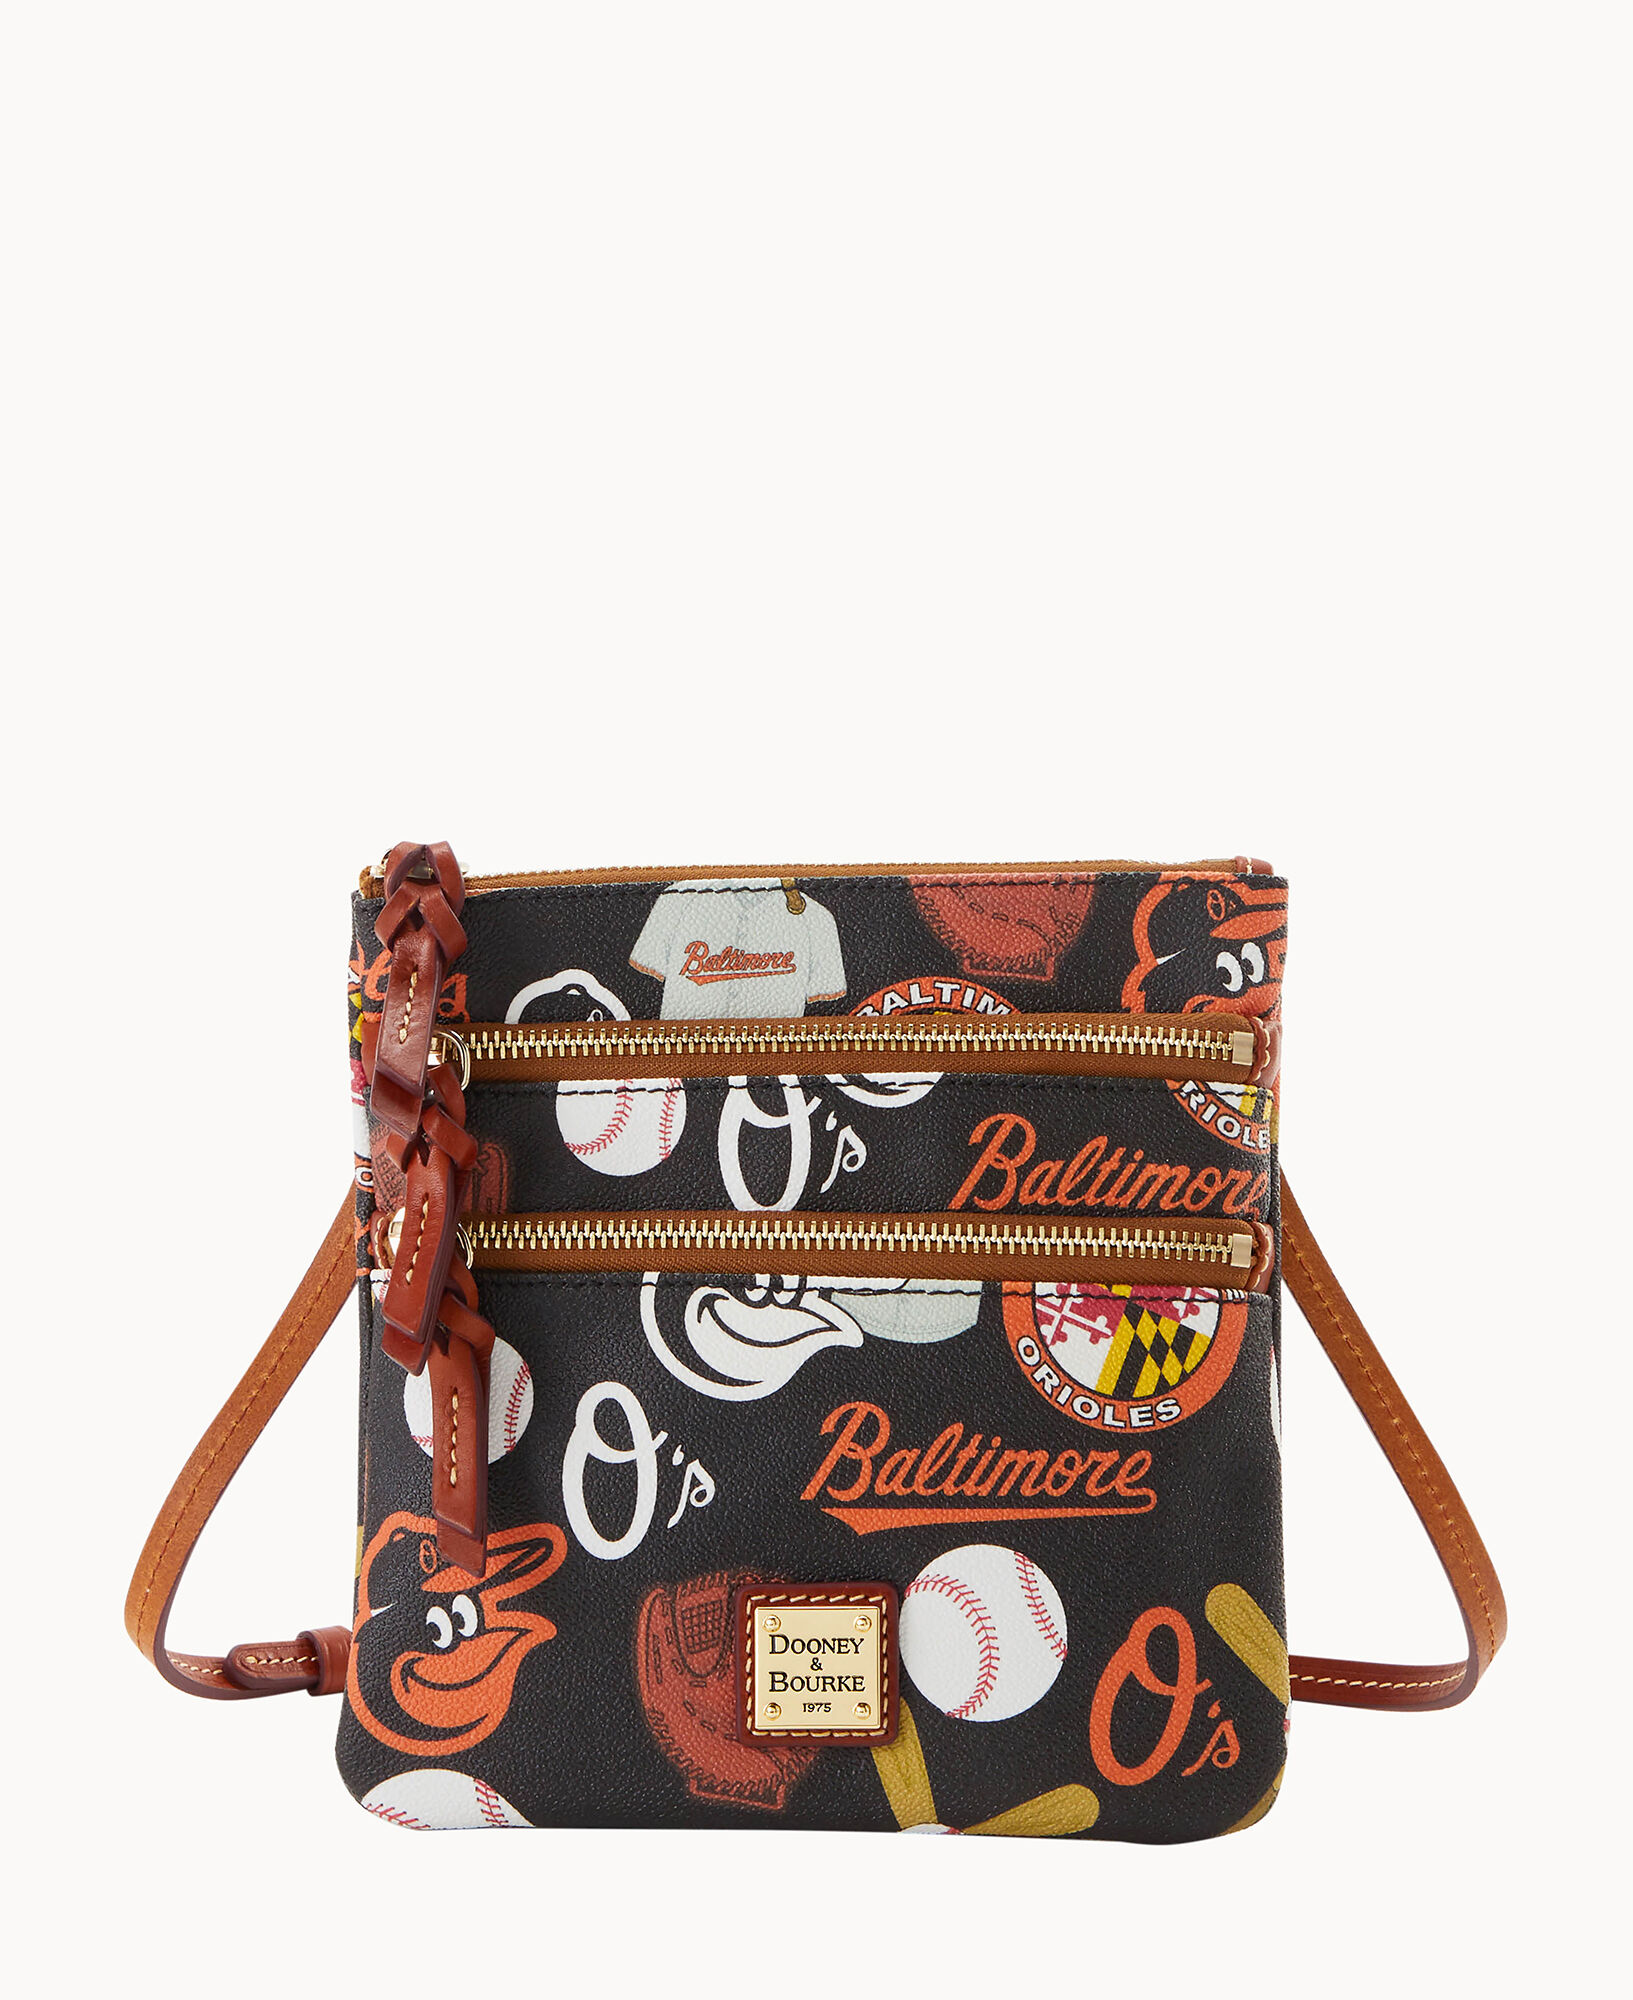 Dooney & Bourke Baltimore Orioles Triple Zip Crossbody Bag